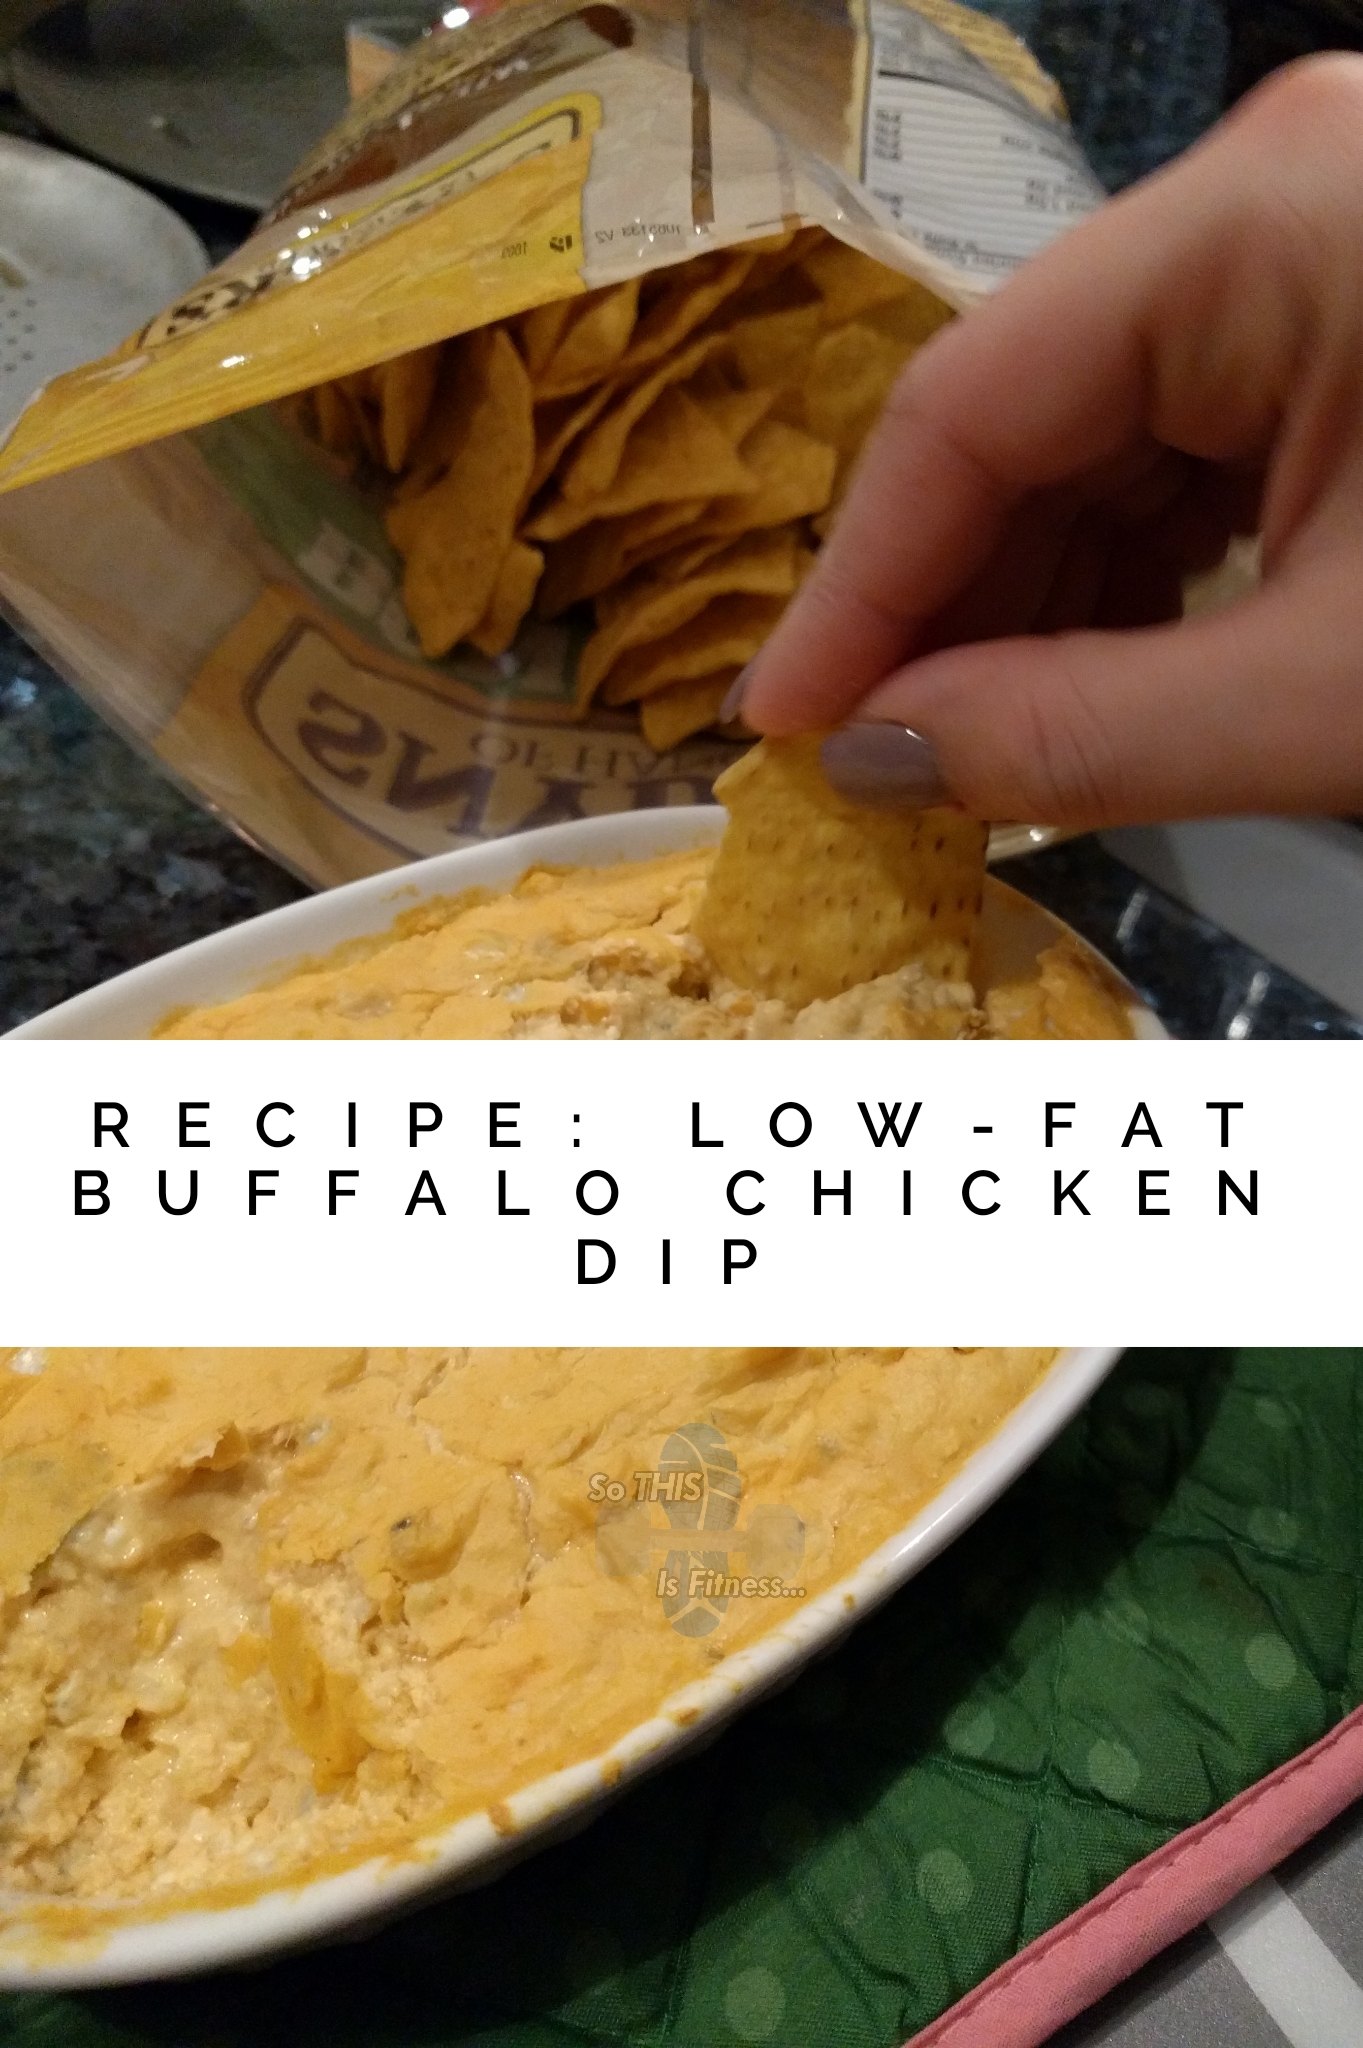 Low-Fat Buffalo Chicken Dip (recipe) – It DOES Exist!